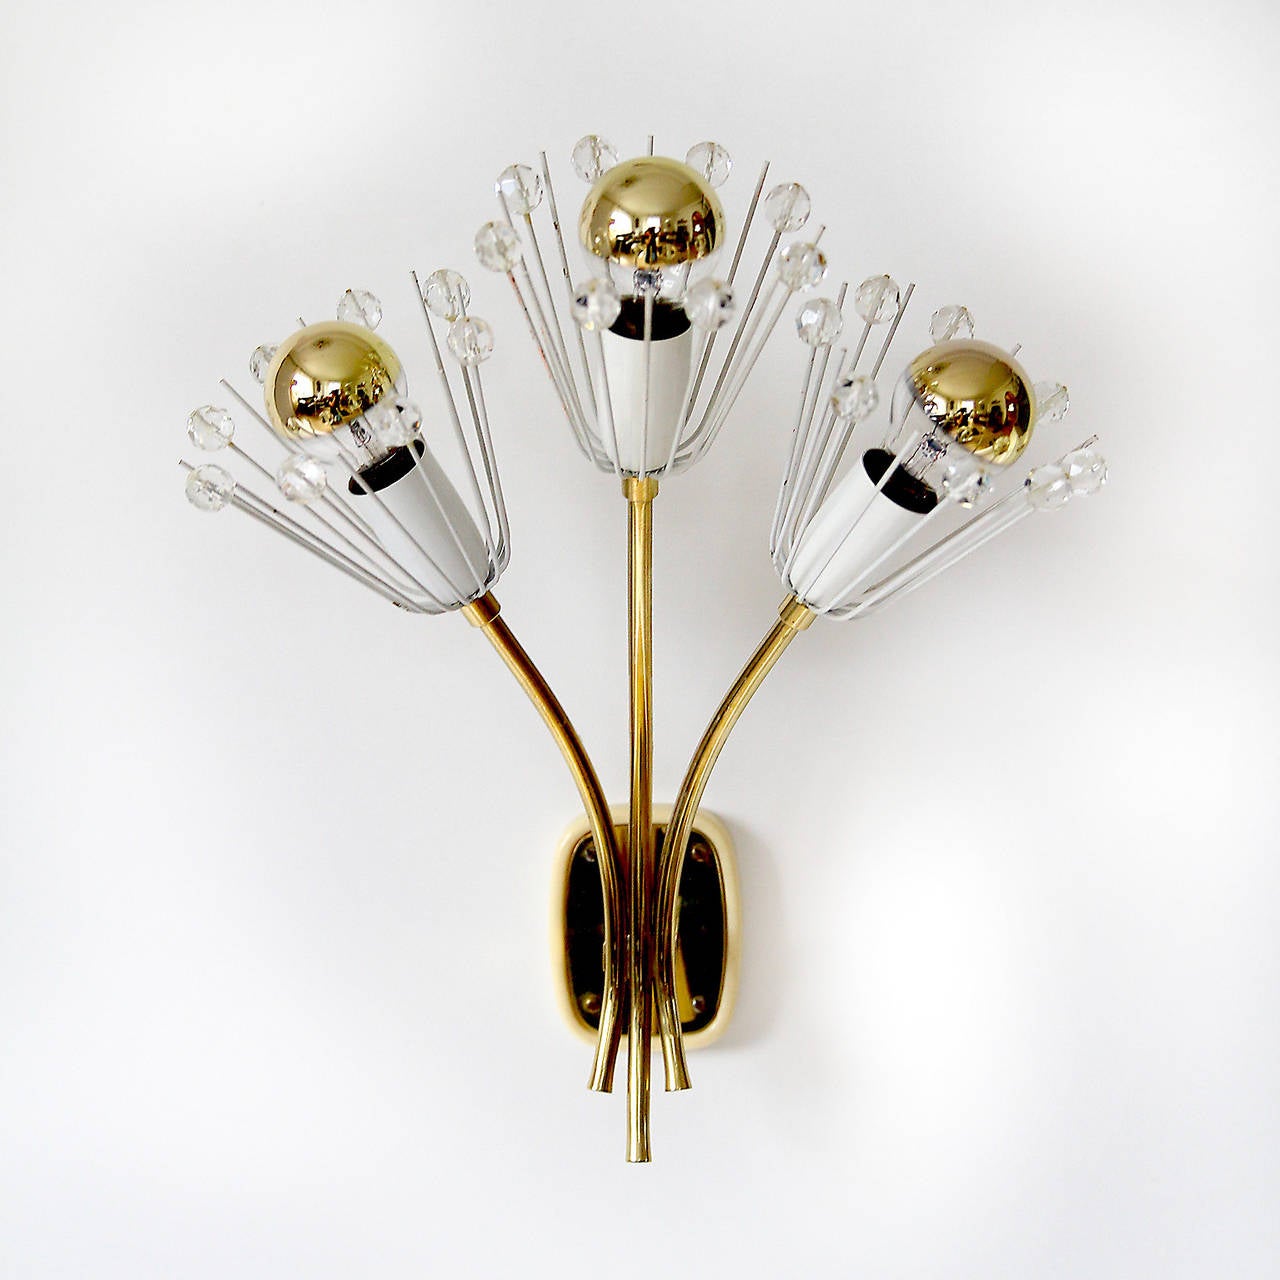 Ein charmantes Paar Wiener Wandleuchten in Form von Blumensträußen von Emil Stejnar für Rupert Nikoll, Wien Österreich, hergestellt um 1950. 
Die Stücke sind aus Messing, weiß lackiertem Metall und handgeschliffenem Kristallglas gefertigt. Sie sind